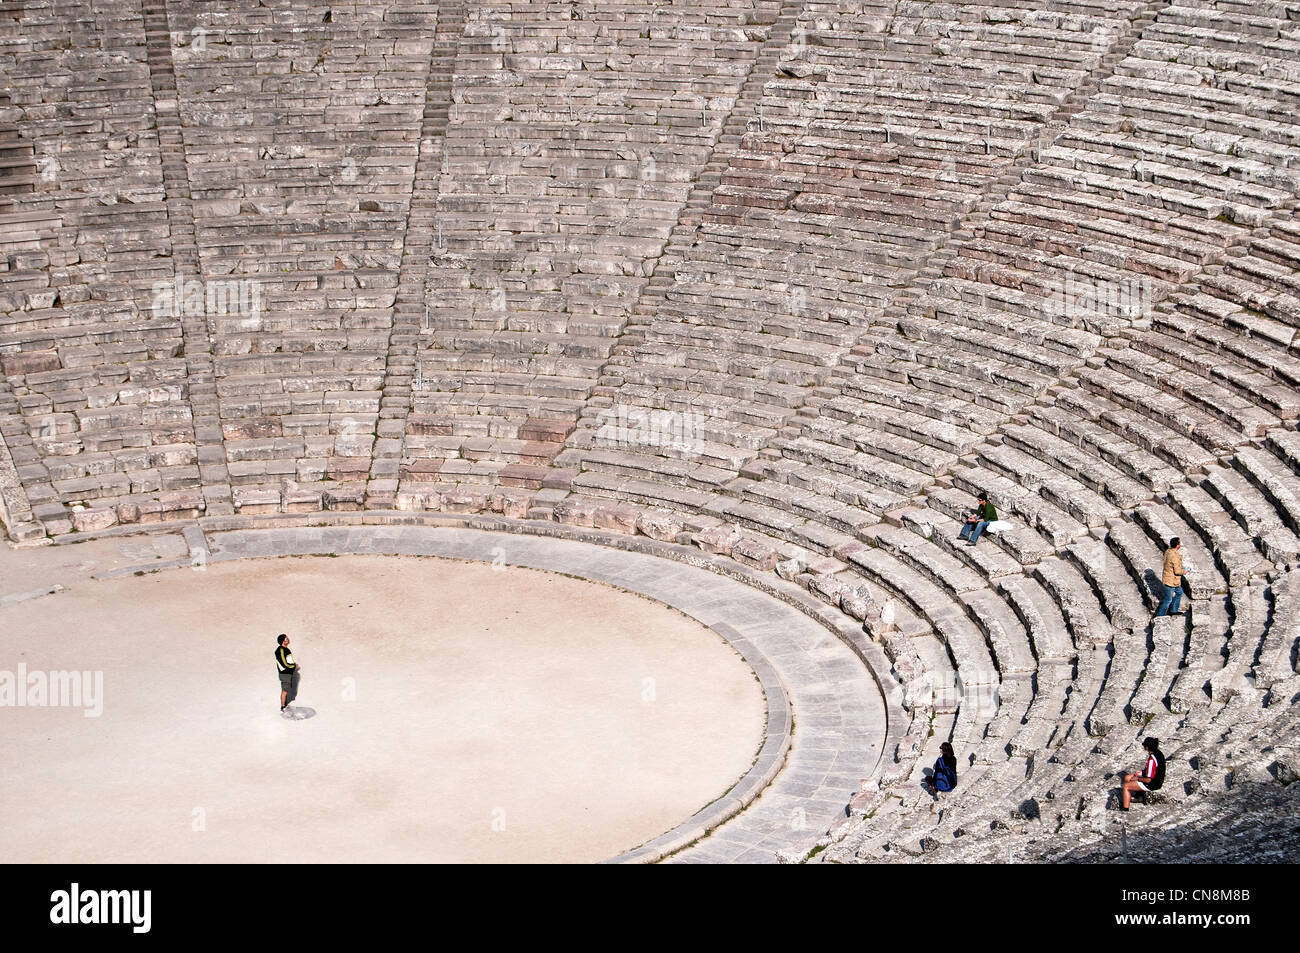 Epidaure , le célèbre théâtre antique grec classique, avec une acoustique exceptionnelle, a construit 4-ème siècle avant J.-C.- Péloponnèse, Grèce Banque D'Images